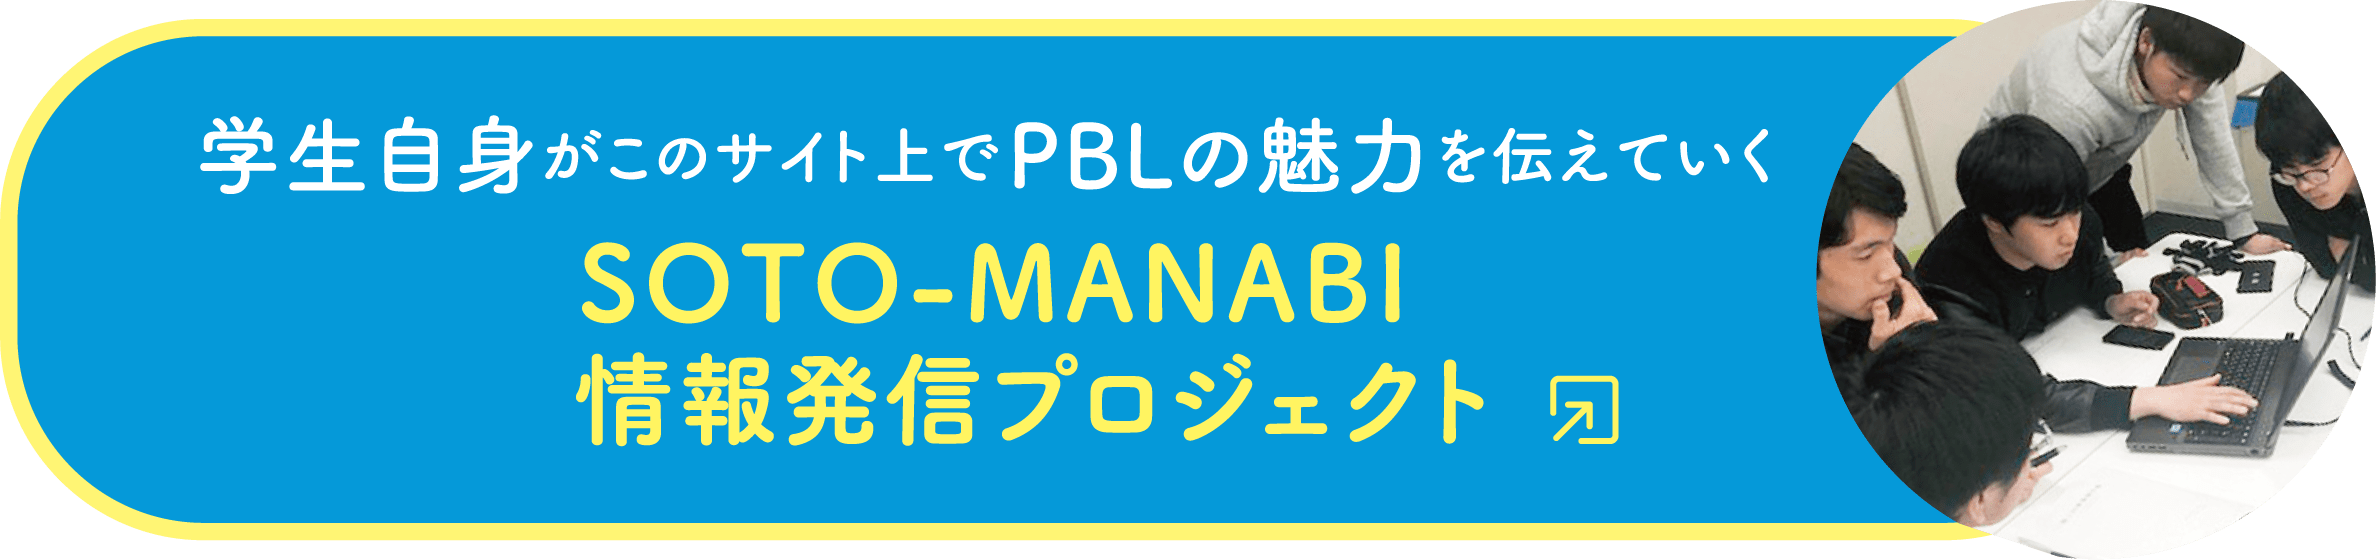 学生自身がこのサイト上でPBLの魅力を伝えていく「SOTO-MANABI 情報発信プロジェクト」